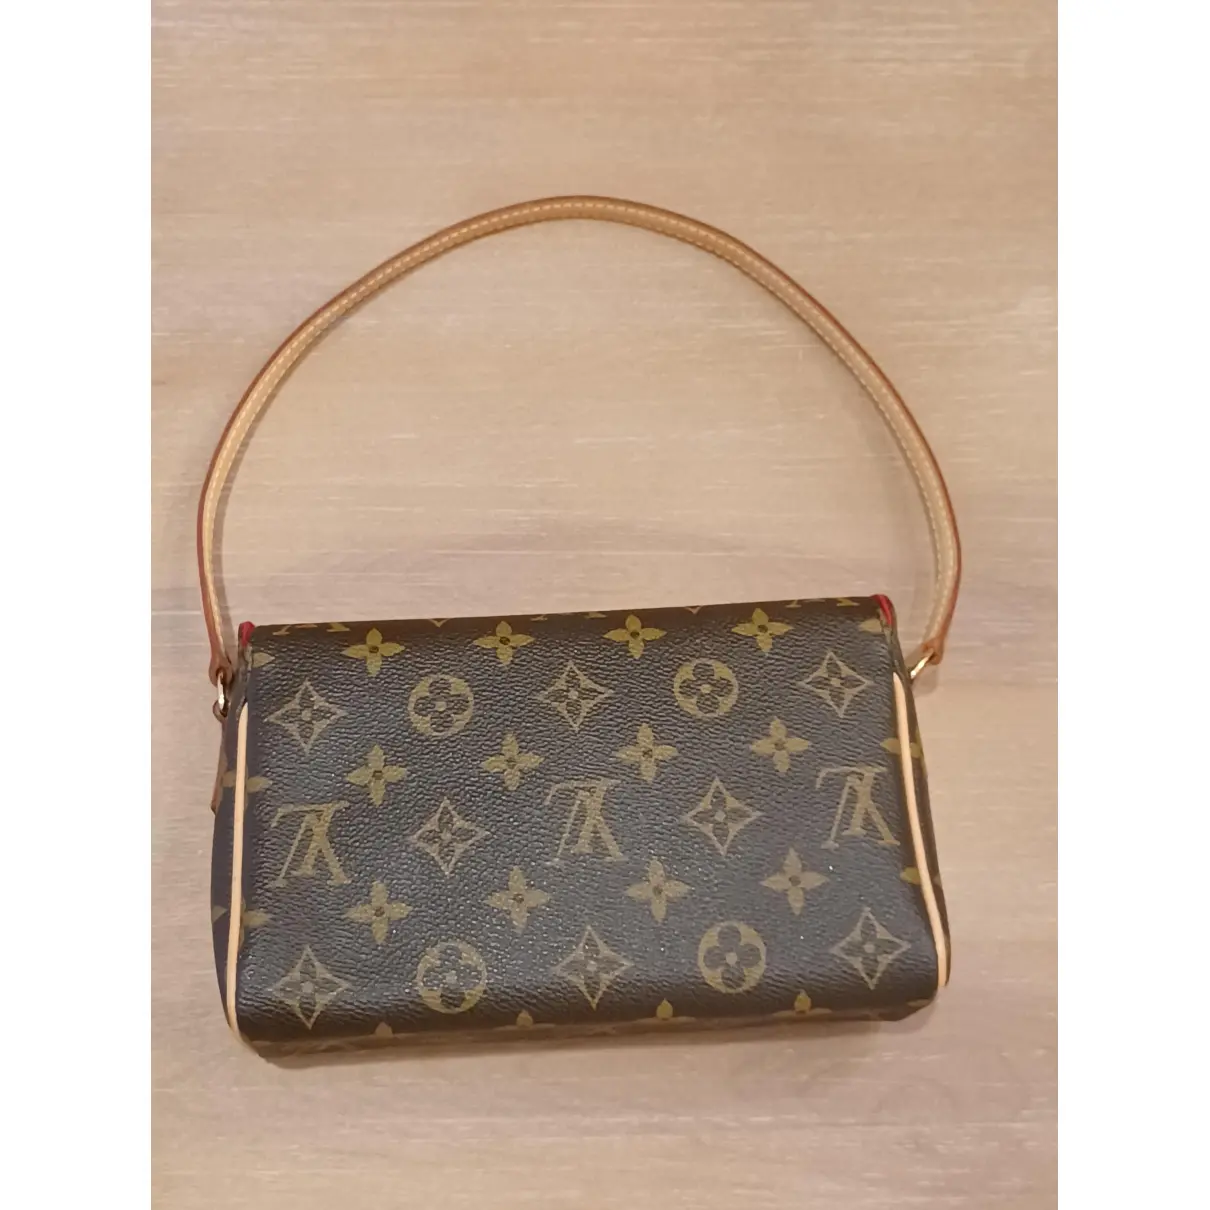 Buy Louis Vuitton Recital cloth handbag online - Vintage